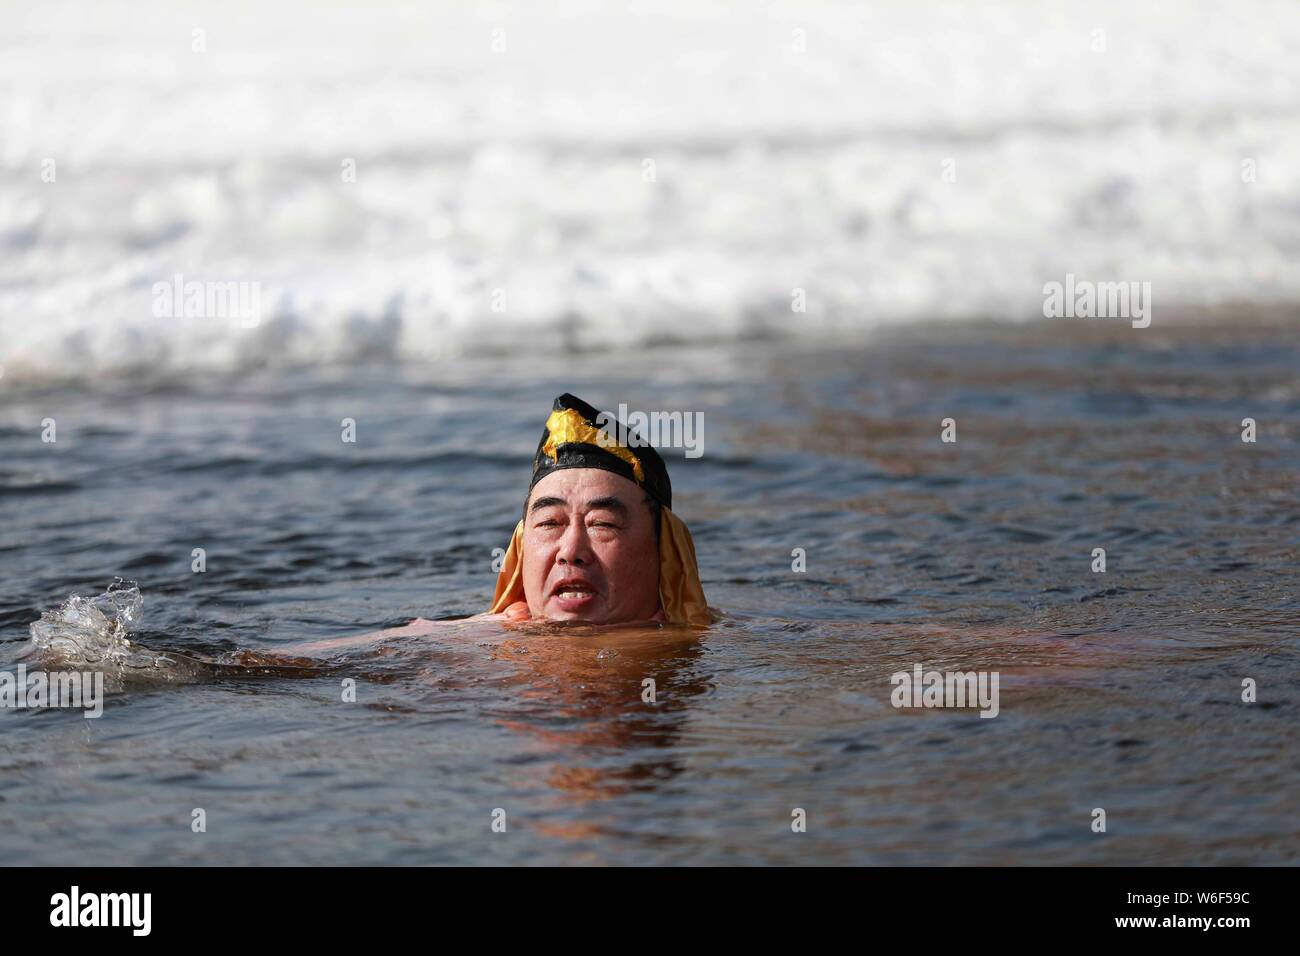 Un amateur de natation d'hiver chinois habillés en costume de Zhu Bajie, un caractère majeur du roman Voyage vers l'Ouest, effectue en plongée drôle Banque D'Images